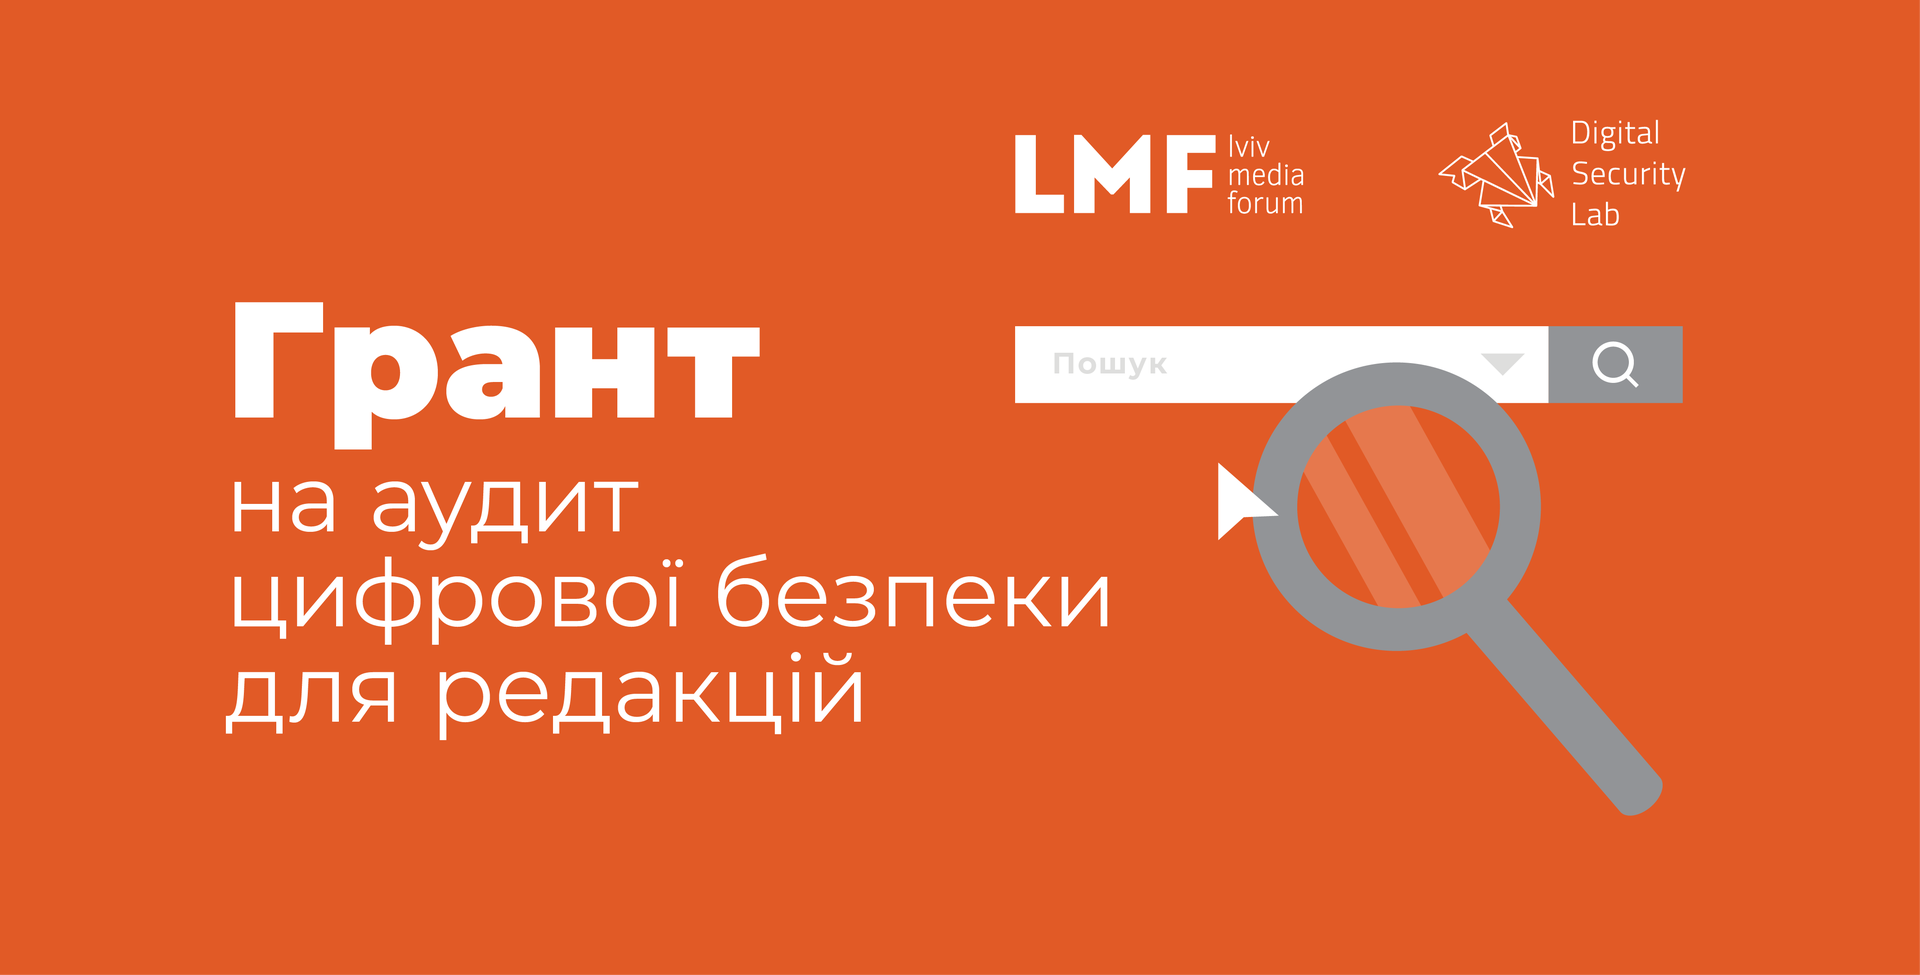 Львівський медіафорум оголошує відбір редакцій на аудит цифрової безпеки регіональних медіа